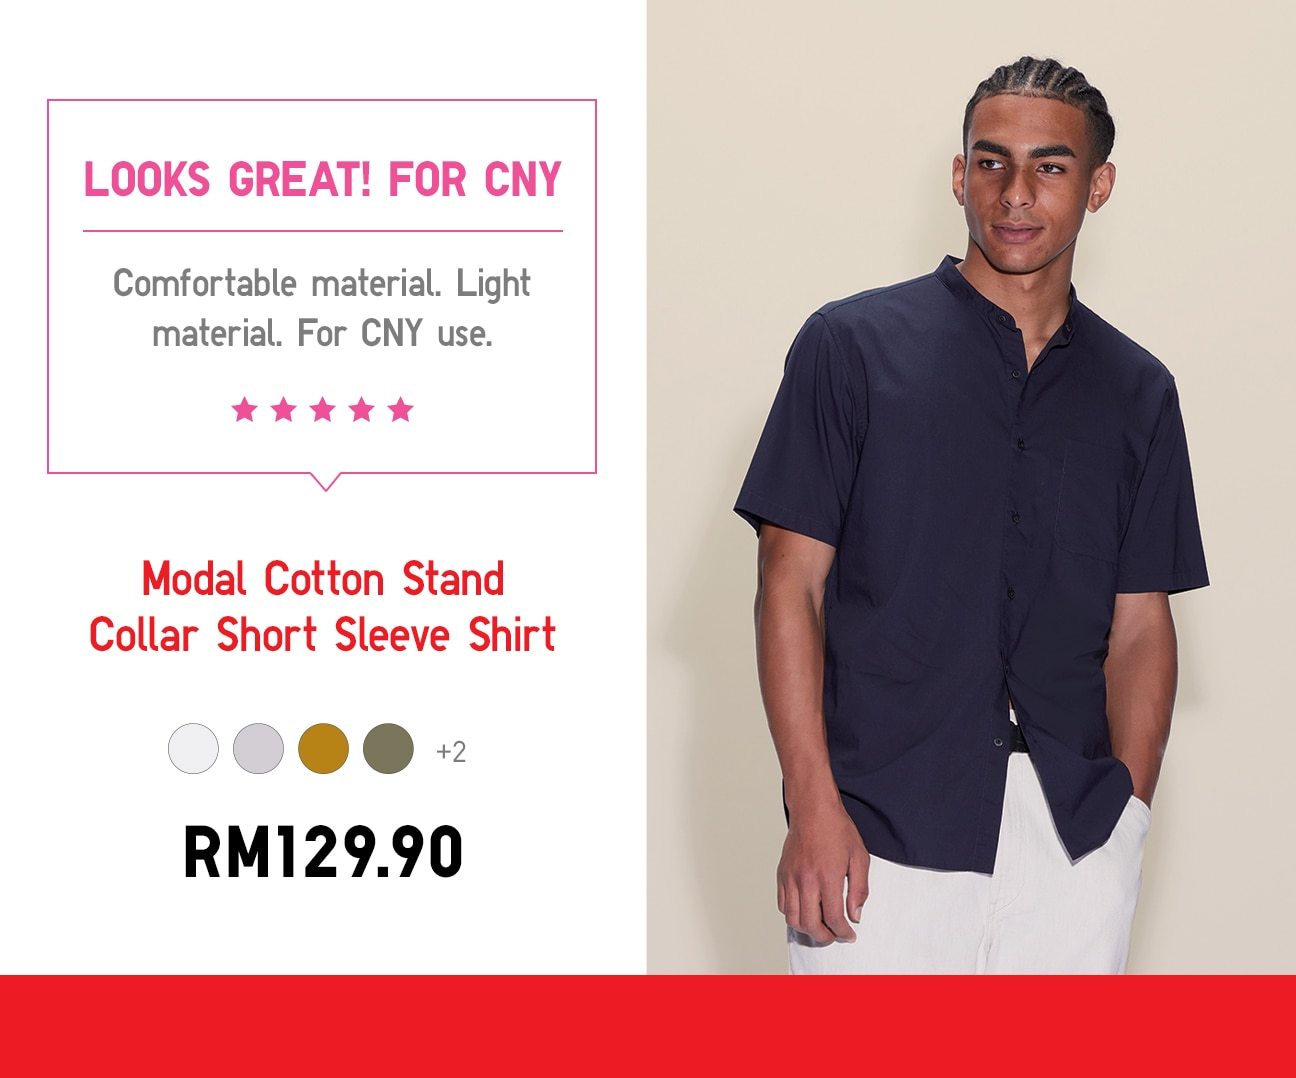 Modal Cotton Stand Collar Short Sleeve Shirt